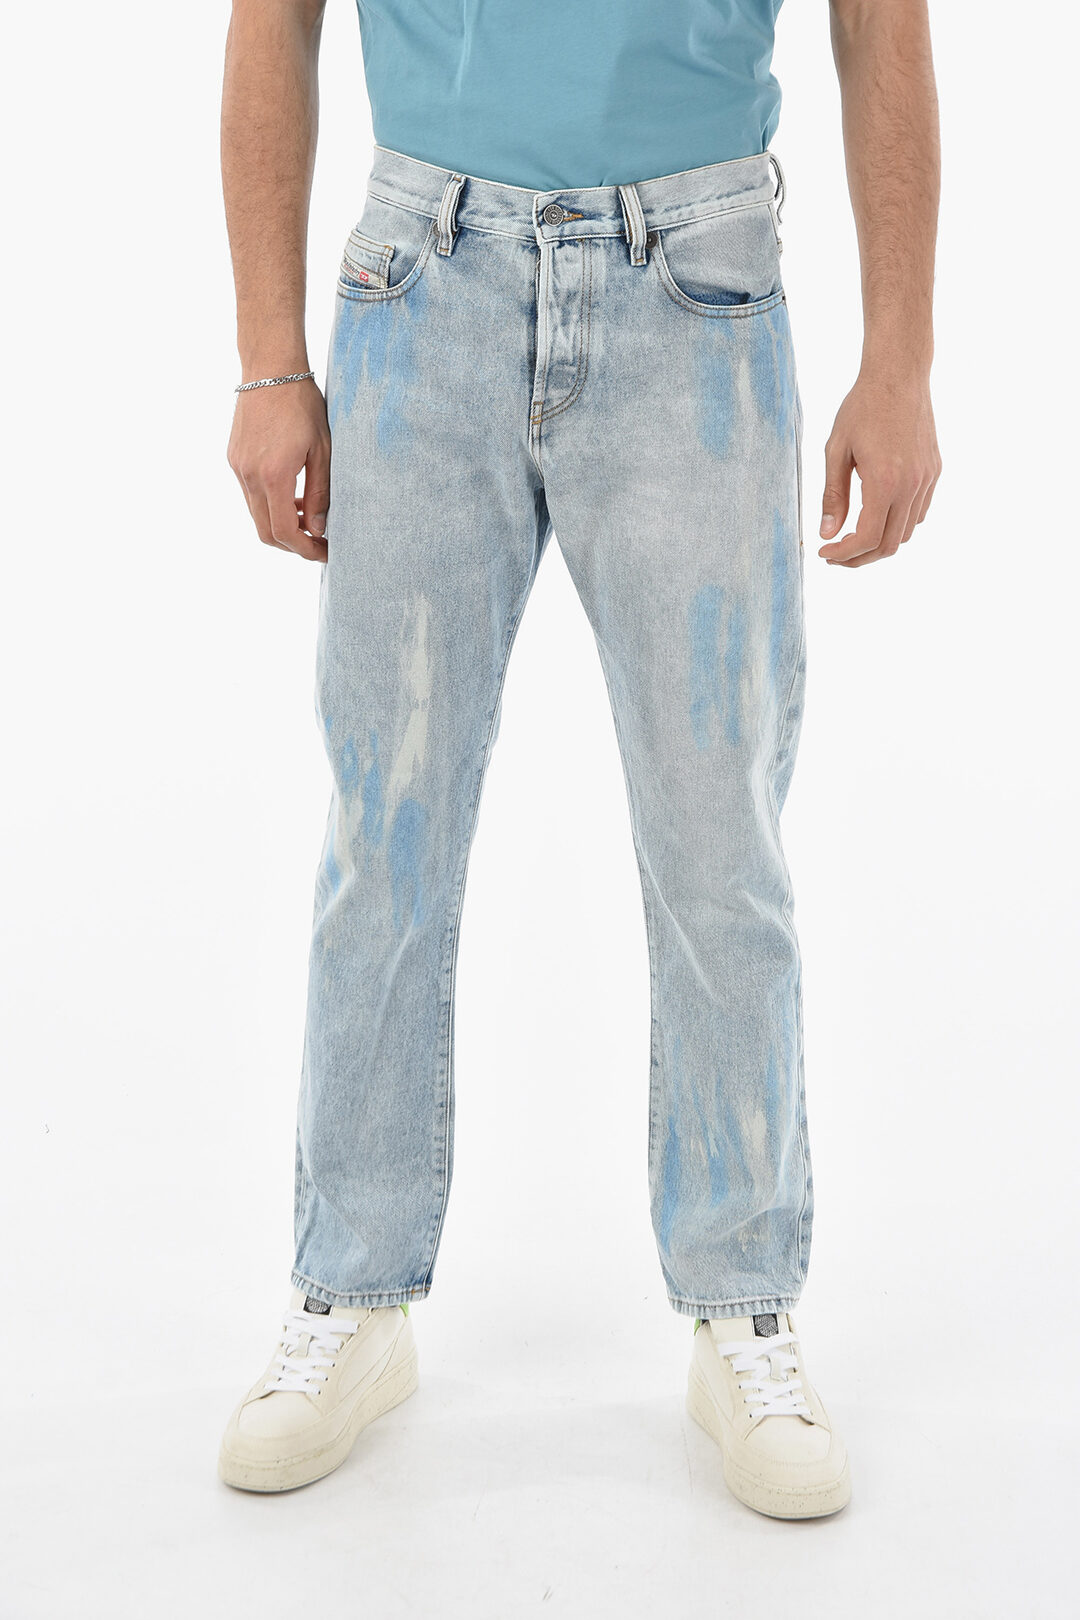 pasillo suficiente Alegrarse Diesel Vintage Effect 5 Pockets D-VIKER Jeans 18cm L32 men - Glamood Outlet